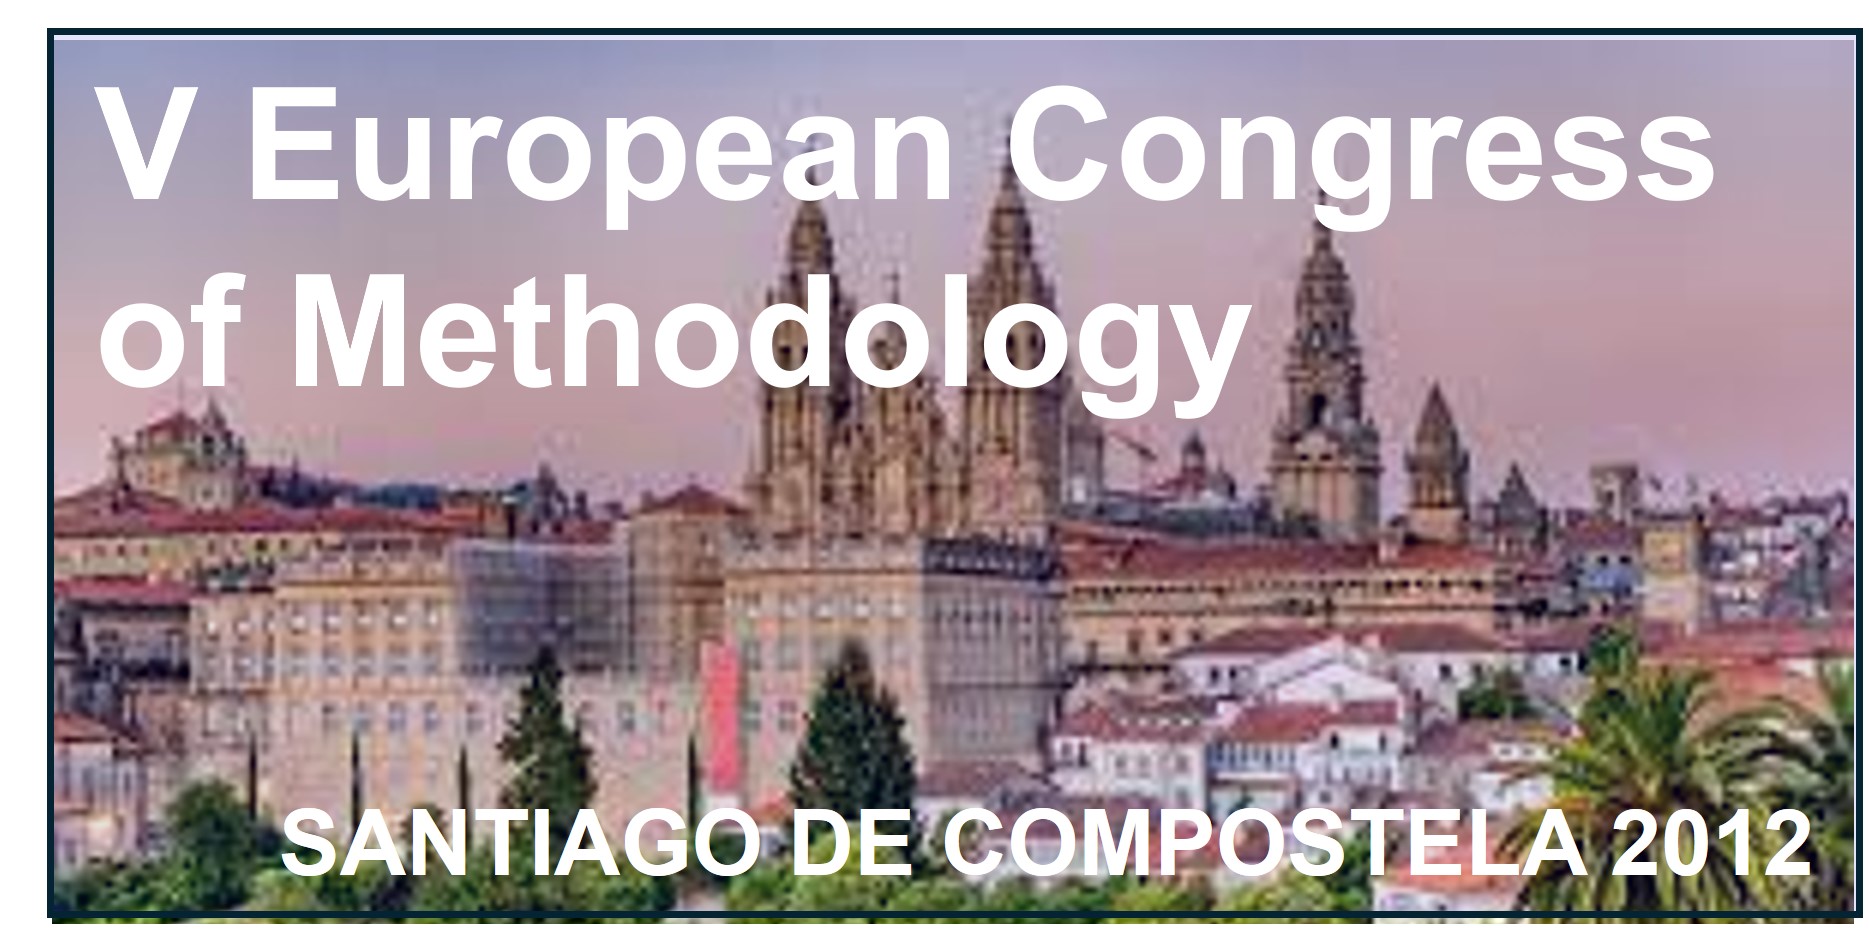    V European Congress of Methodology